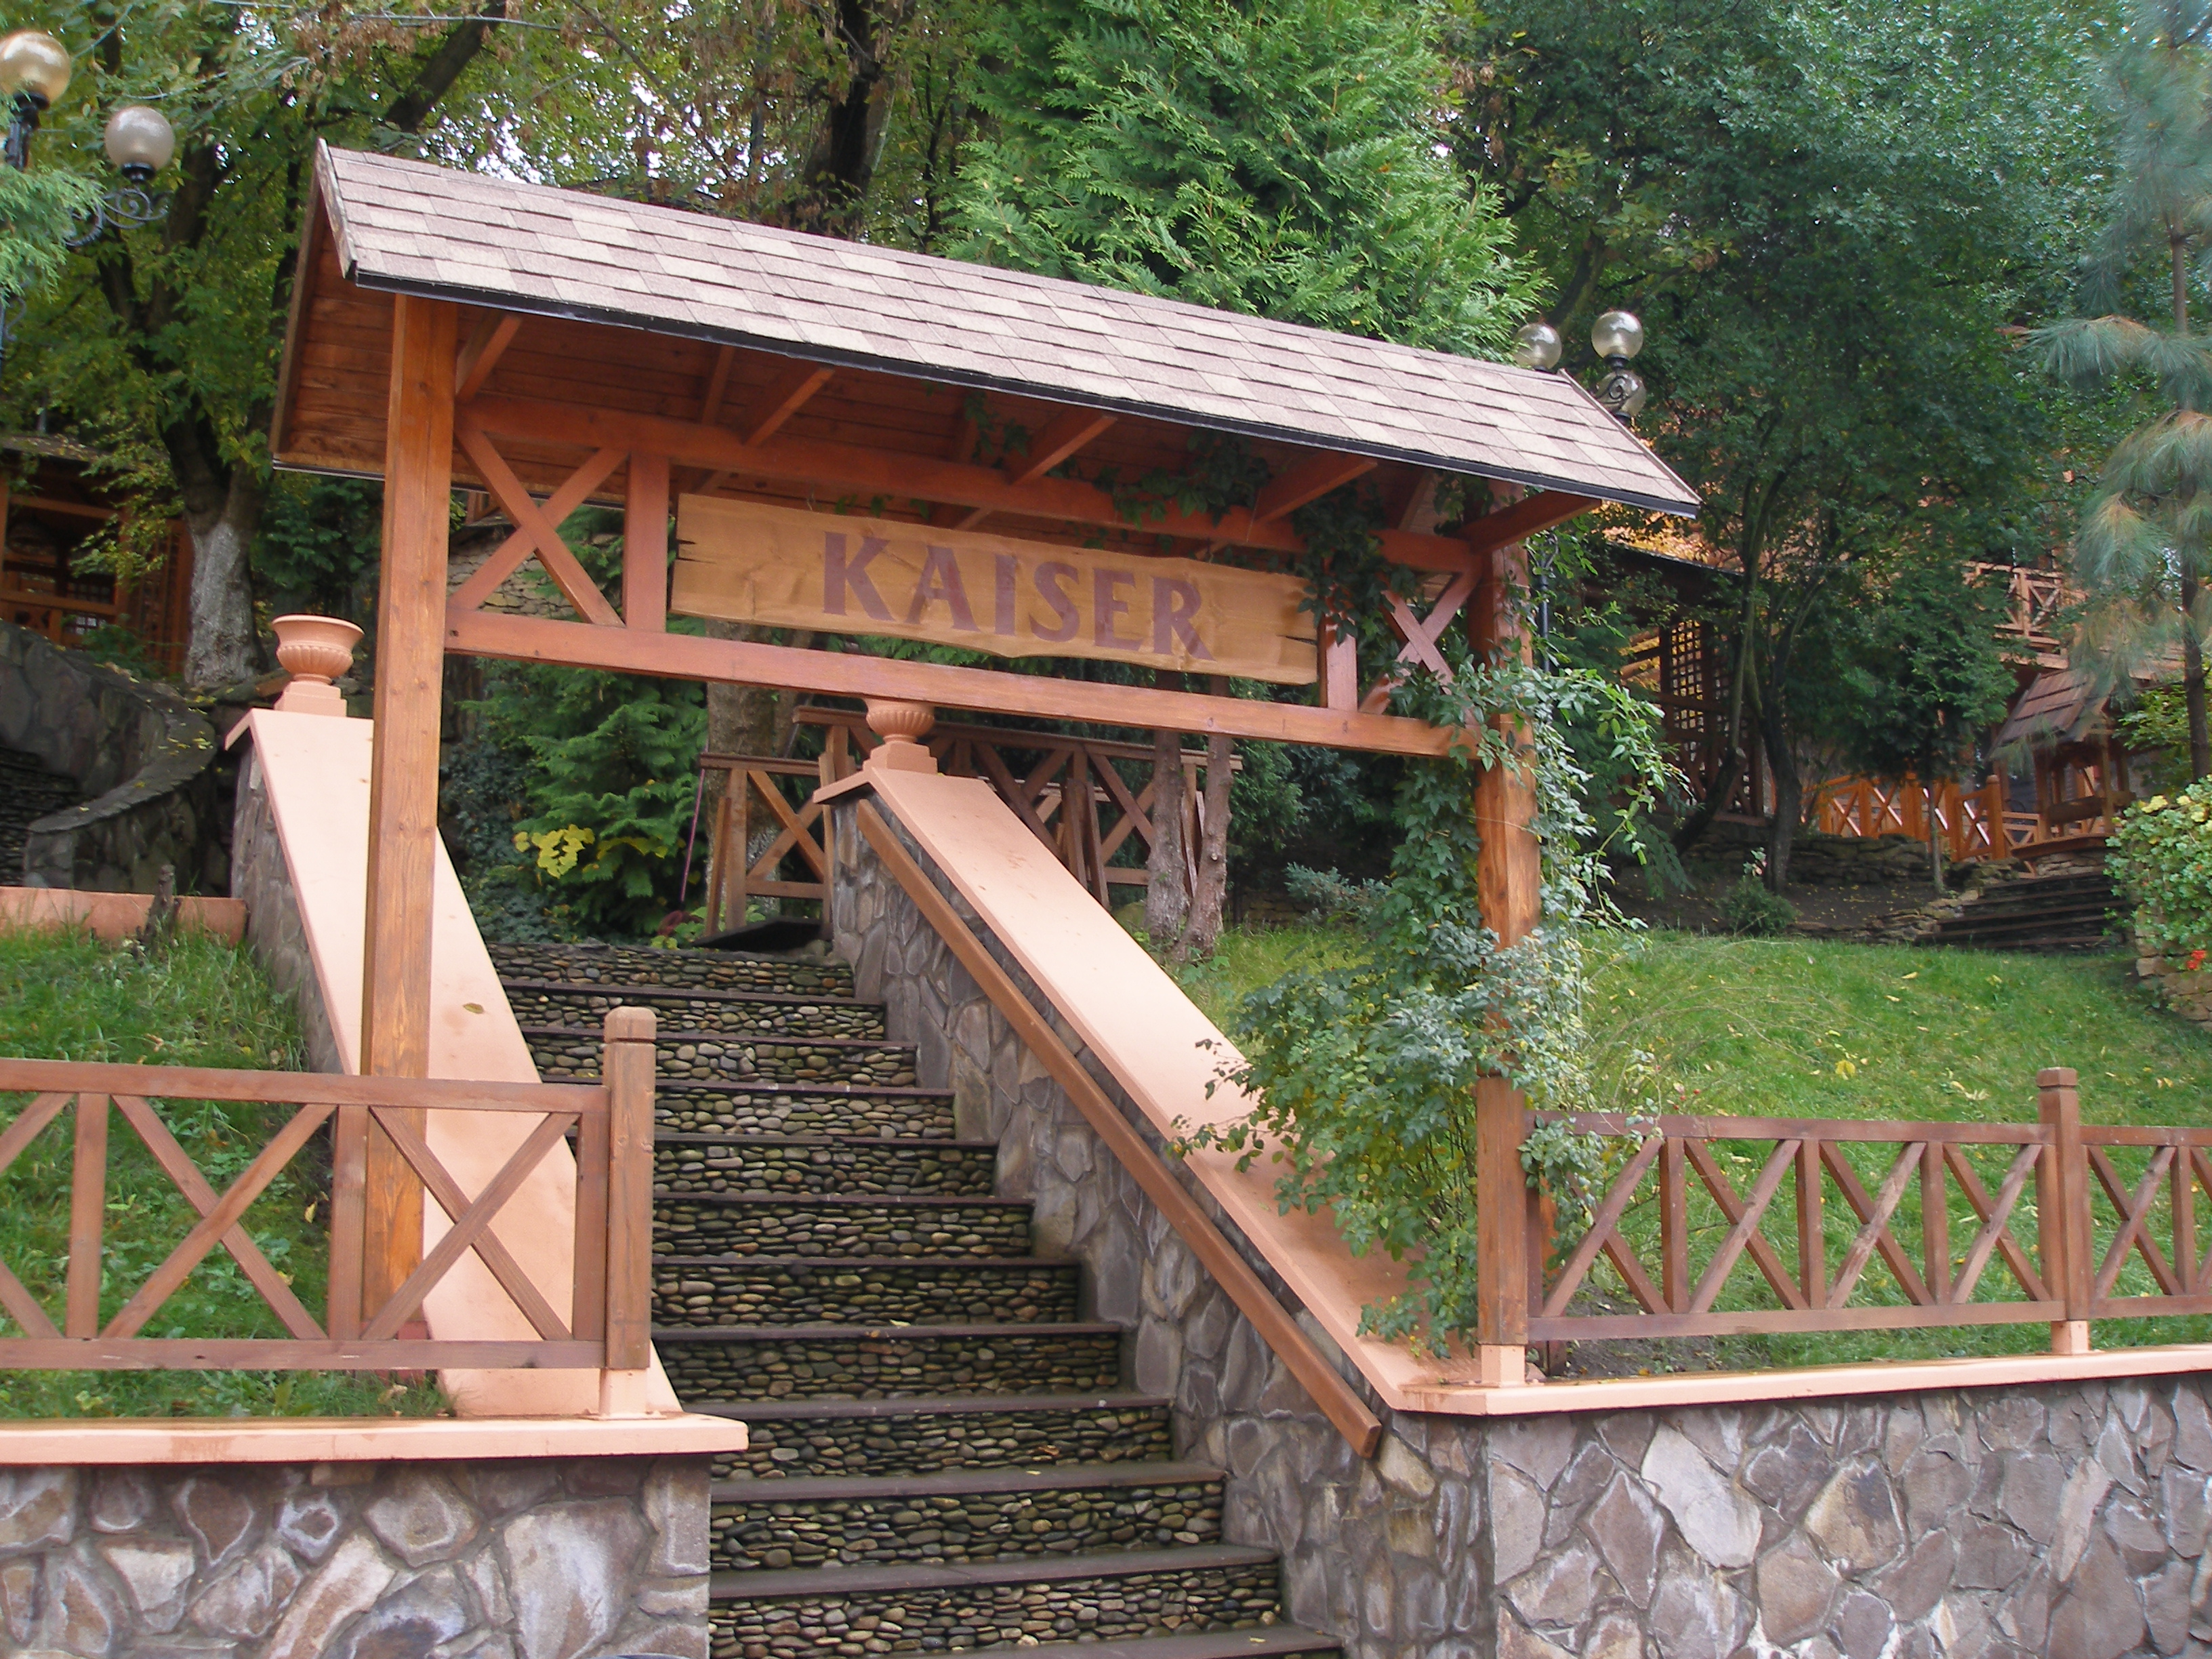 "Kaiser" restaurant